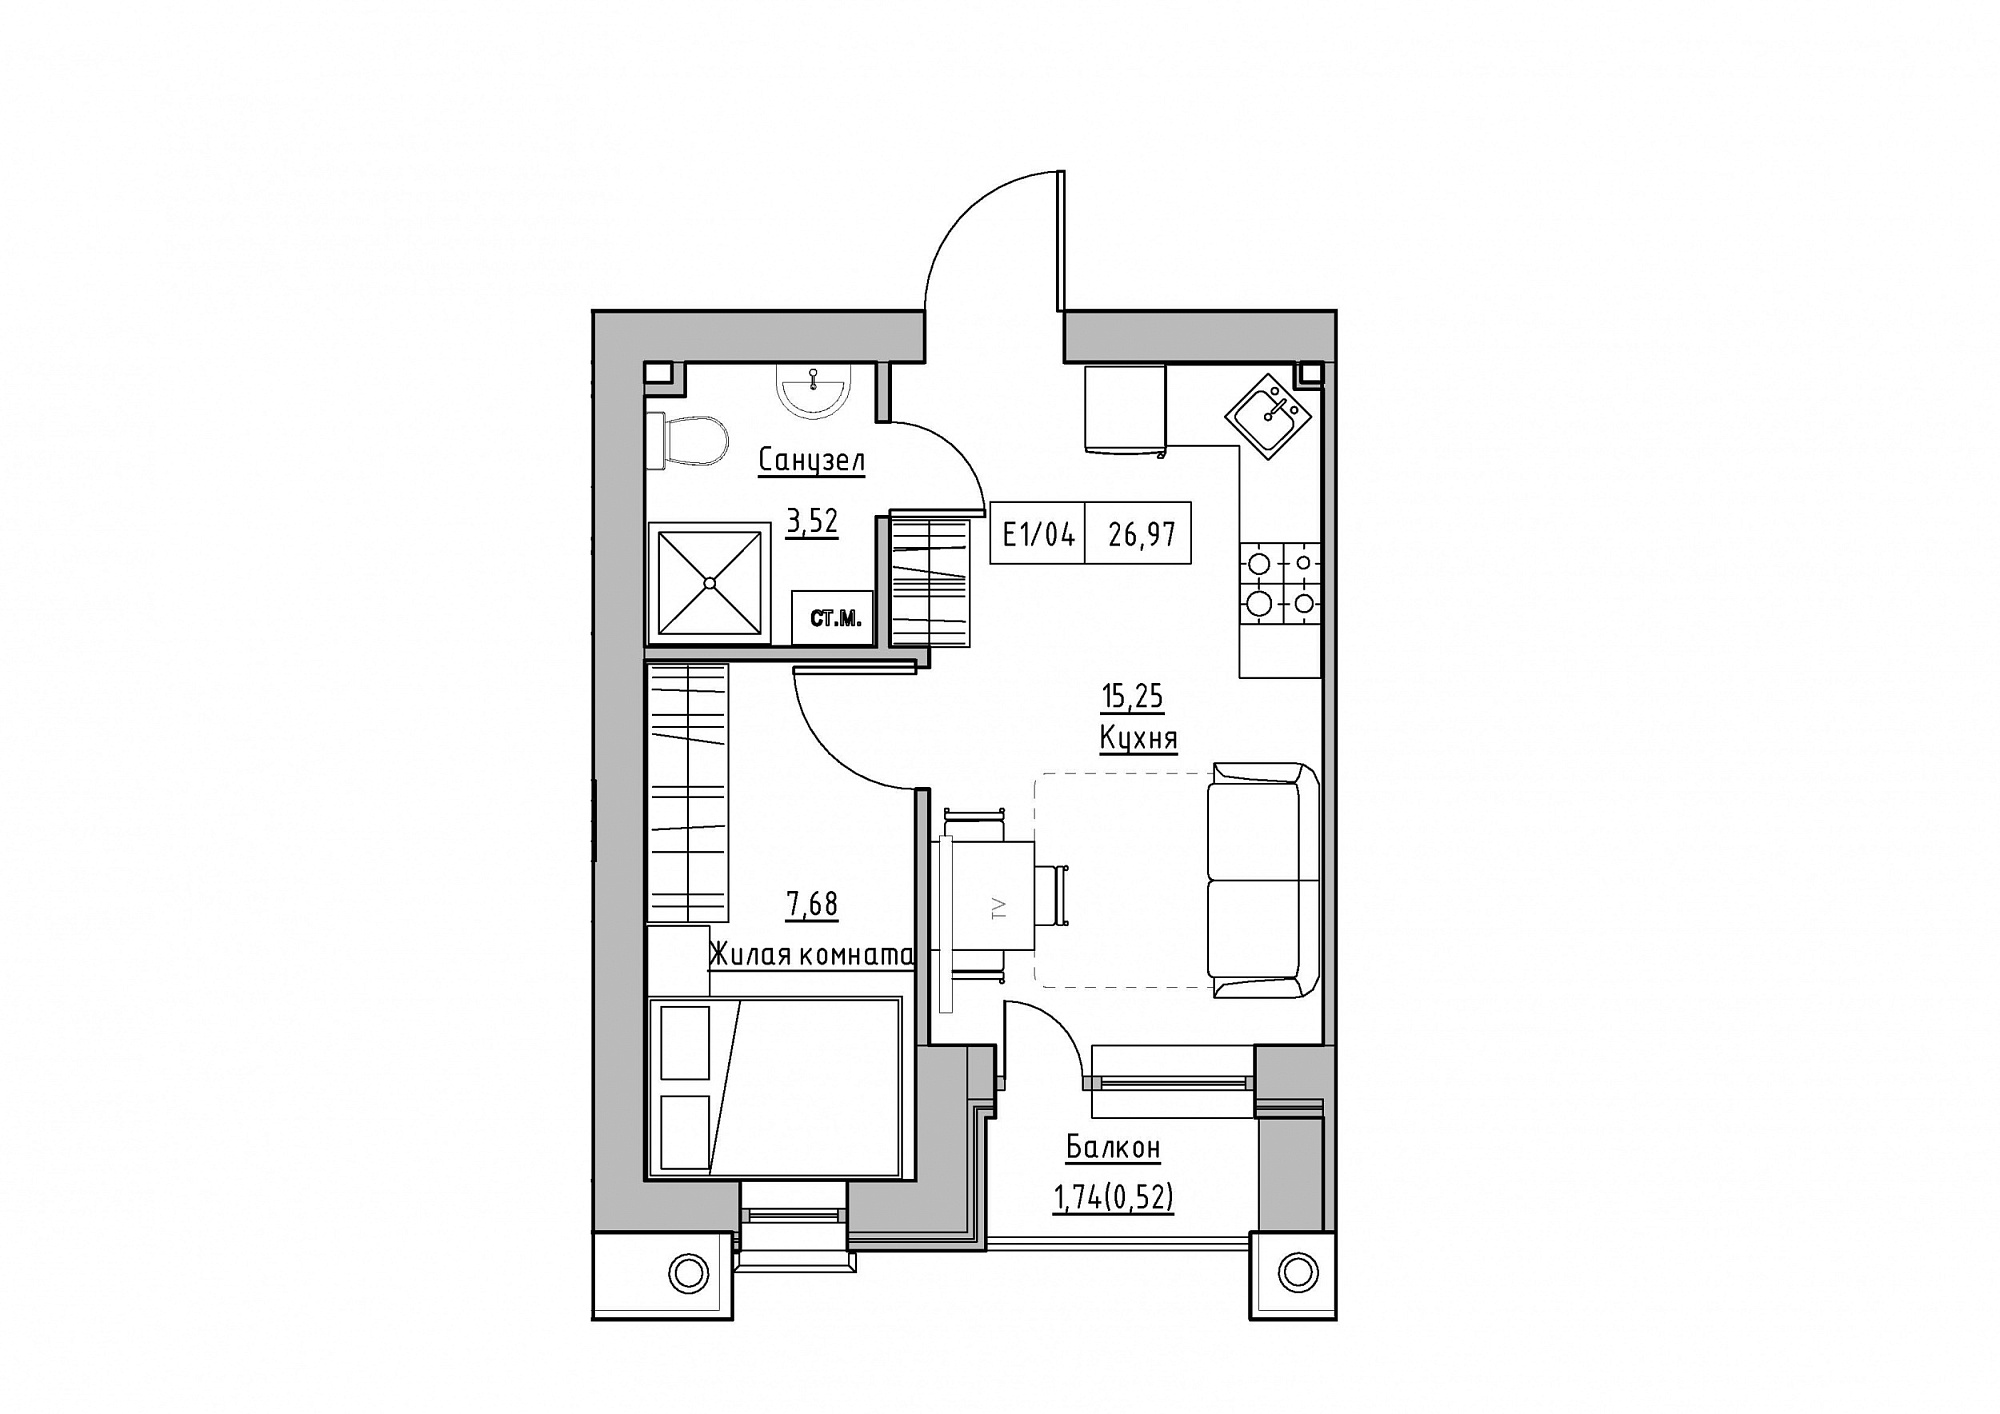 Планування 1-к квартира площею 26.97м2, KS-012-05/0008.